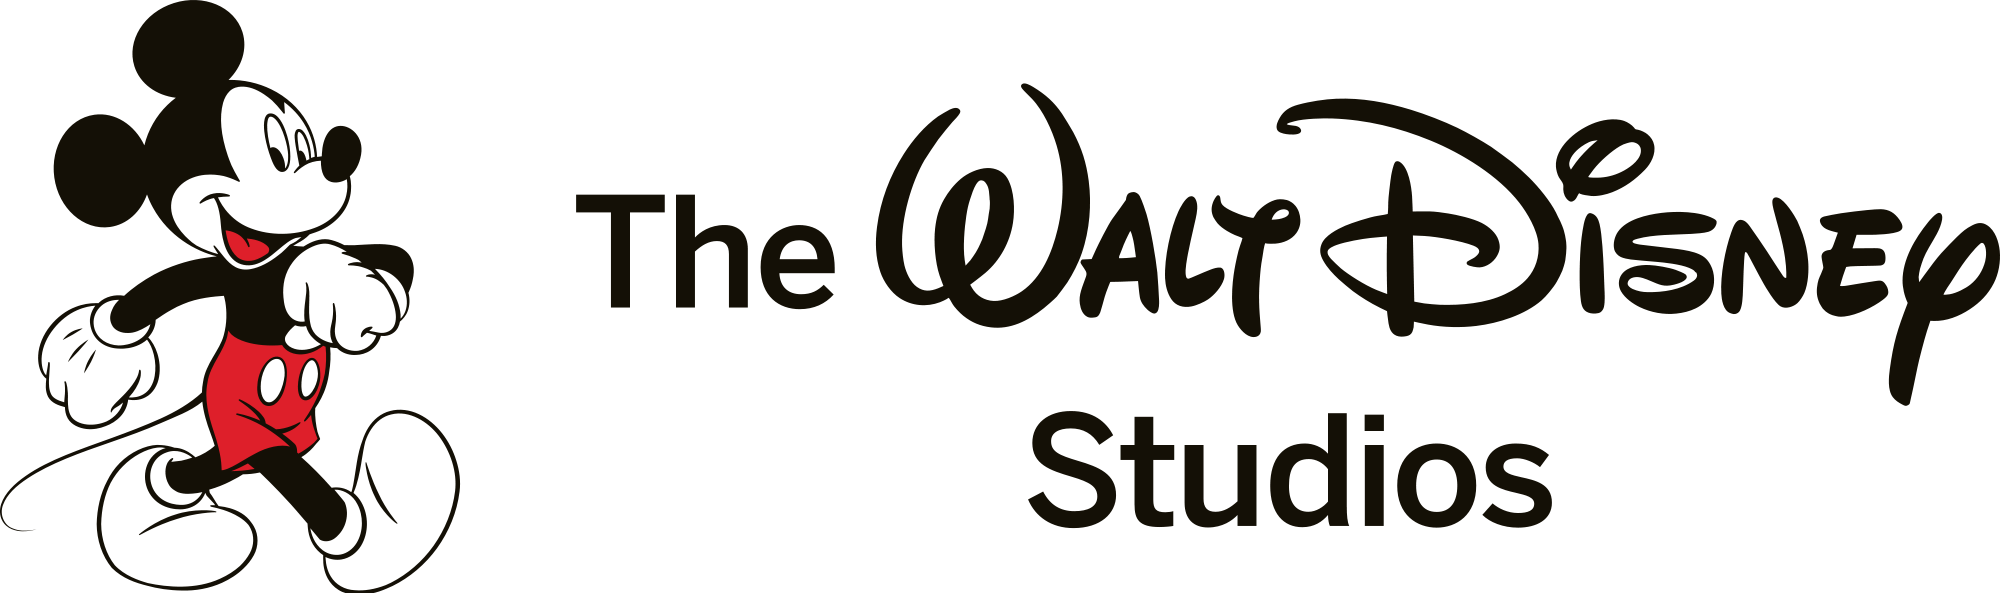 Логотип студии Уолта Диснея. Уолт Дисней анимейшен студио. Фирменный знак Уолт Дисней. Студия уолта диснея